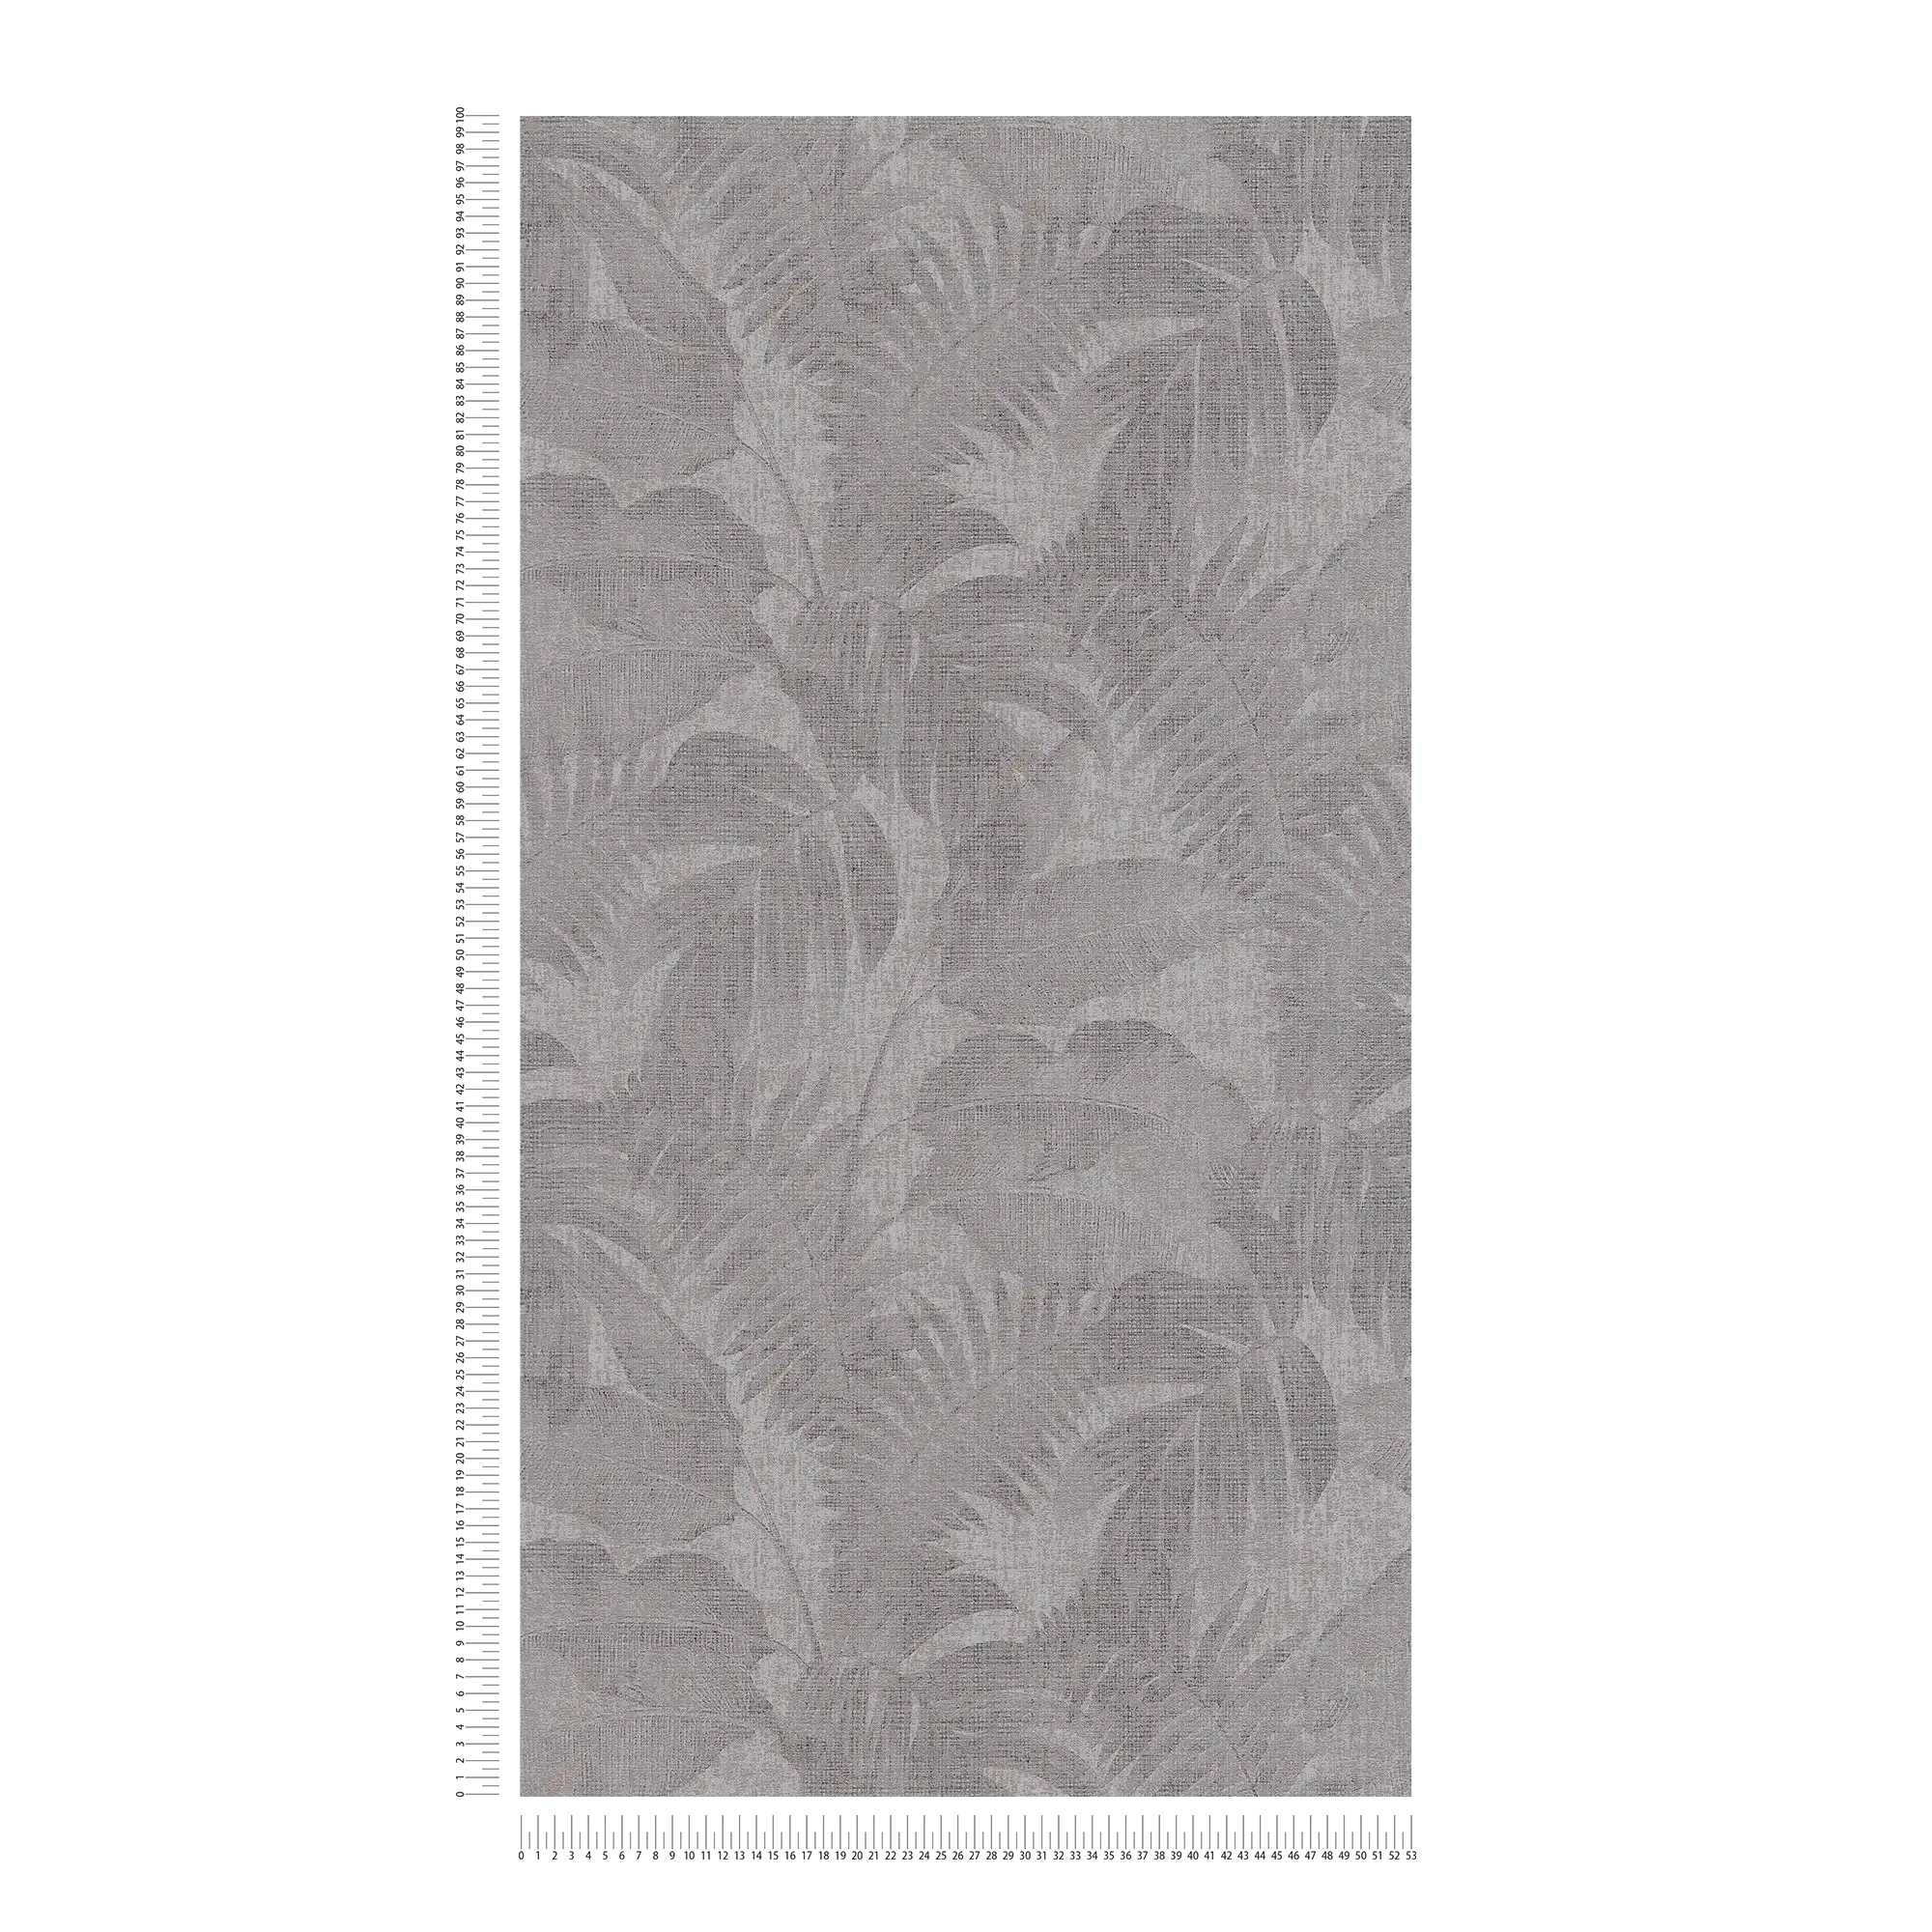             Boho jungle wallpaper with linen look - brown, grey, beige
        